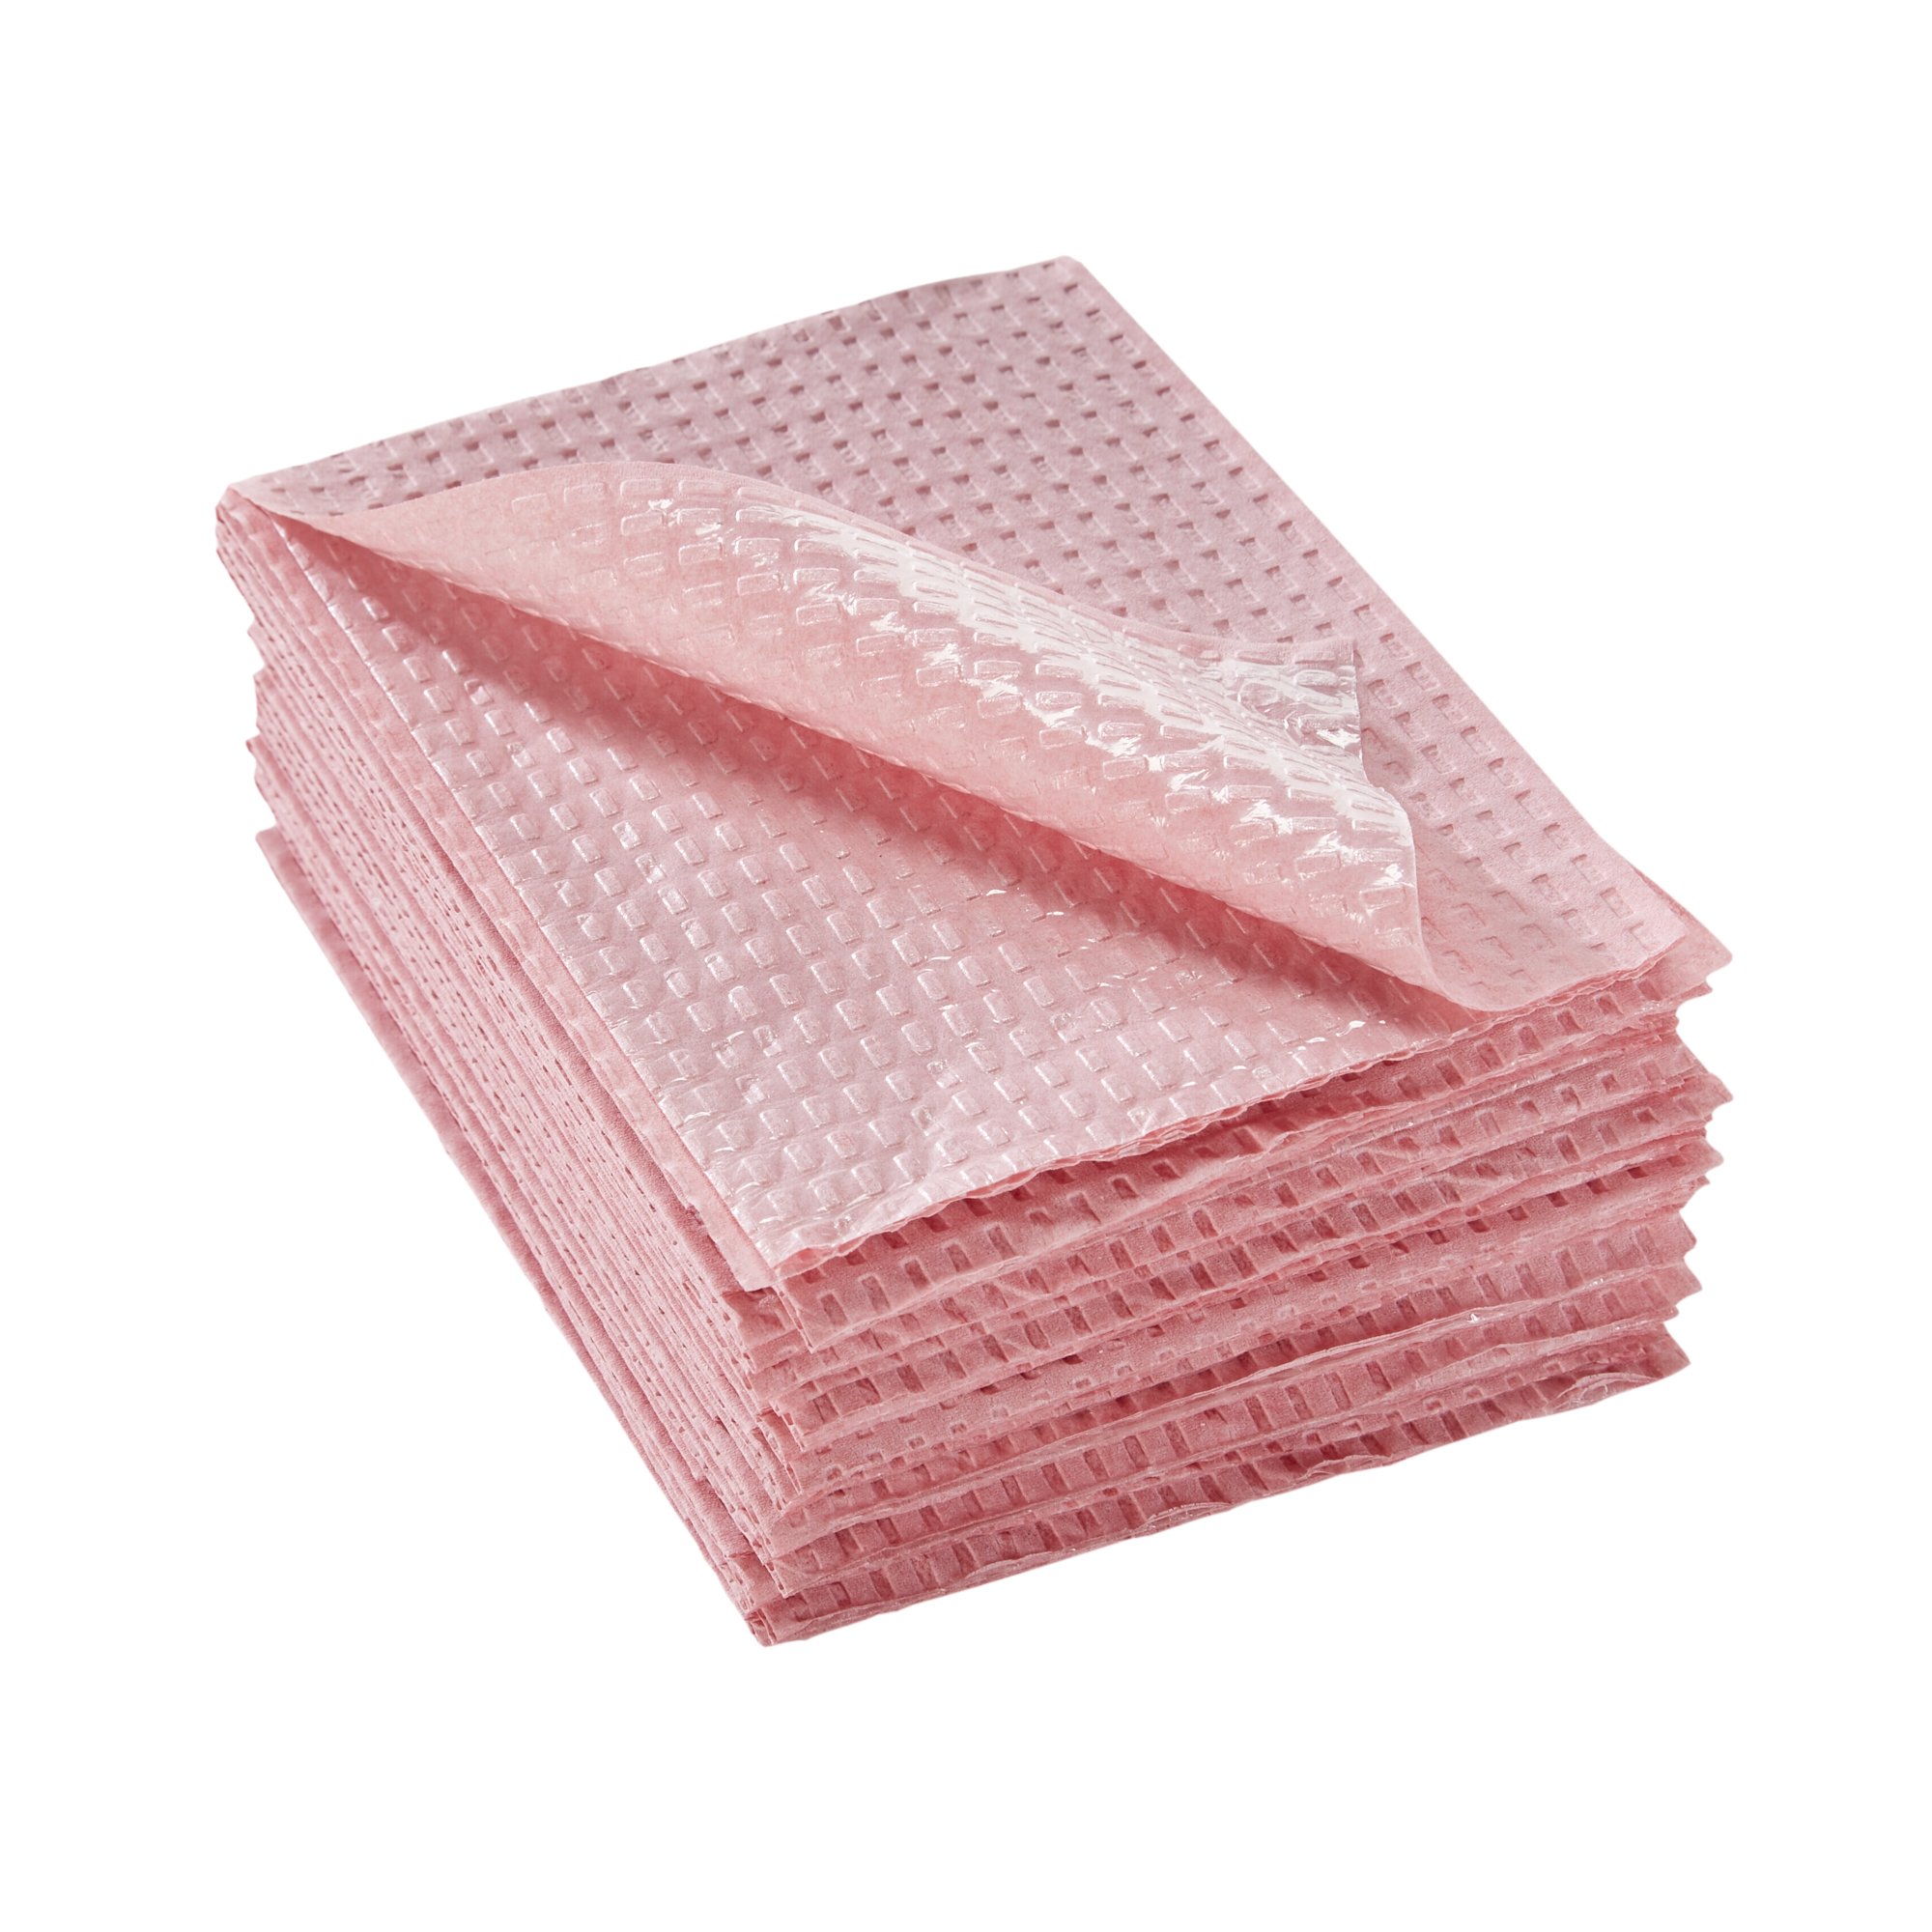 Shop Standard Textile Procedure Towels - McKesson Medical-Surgical